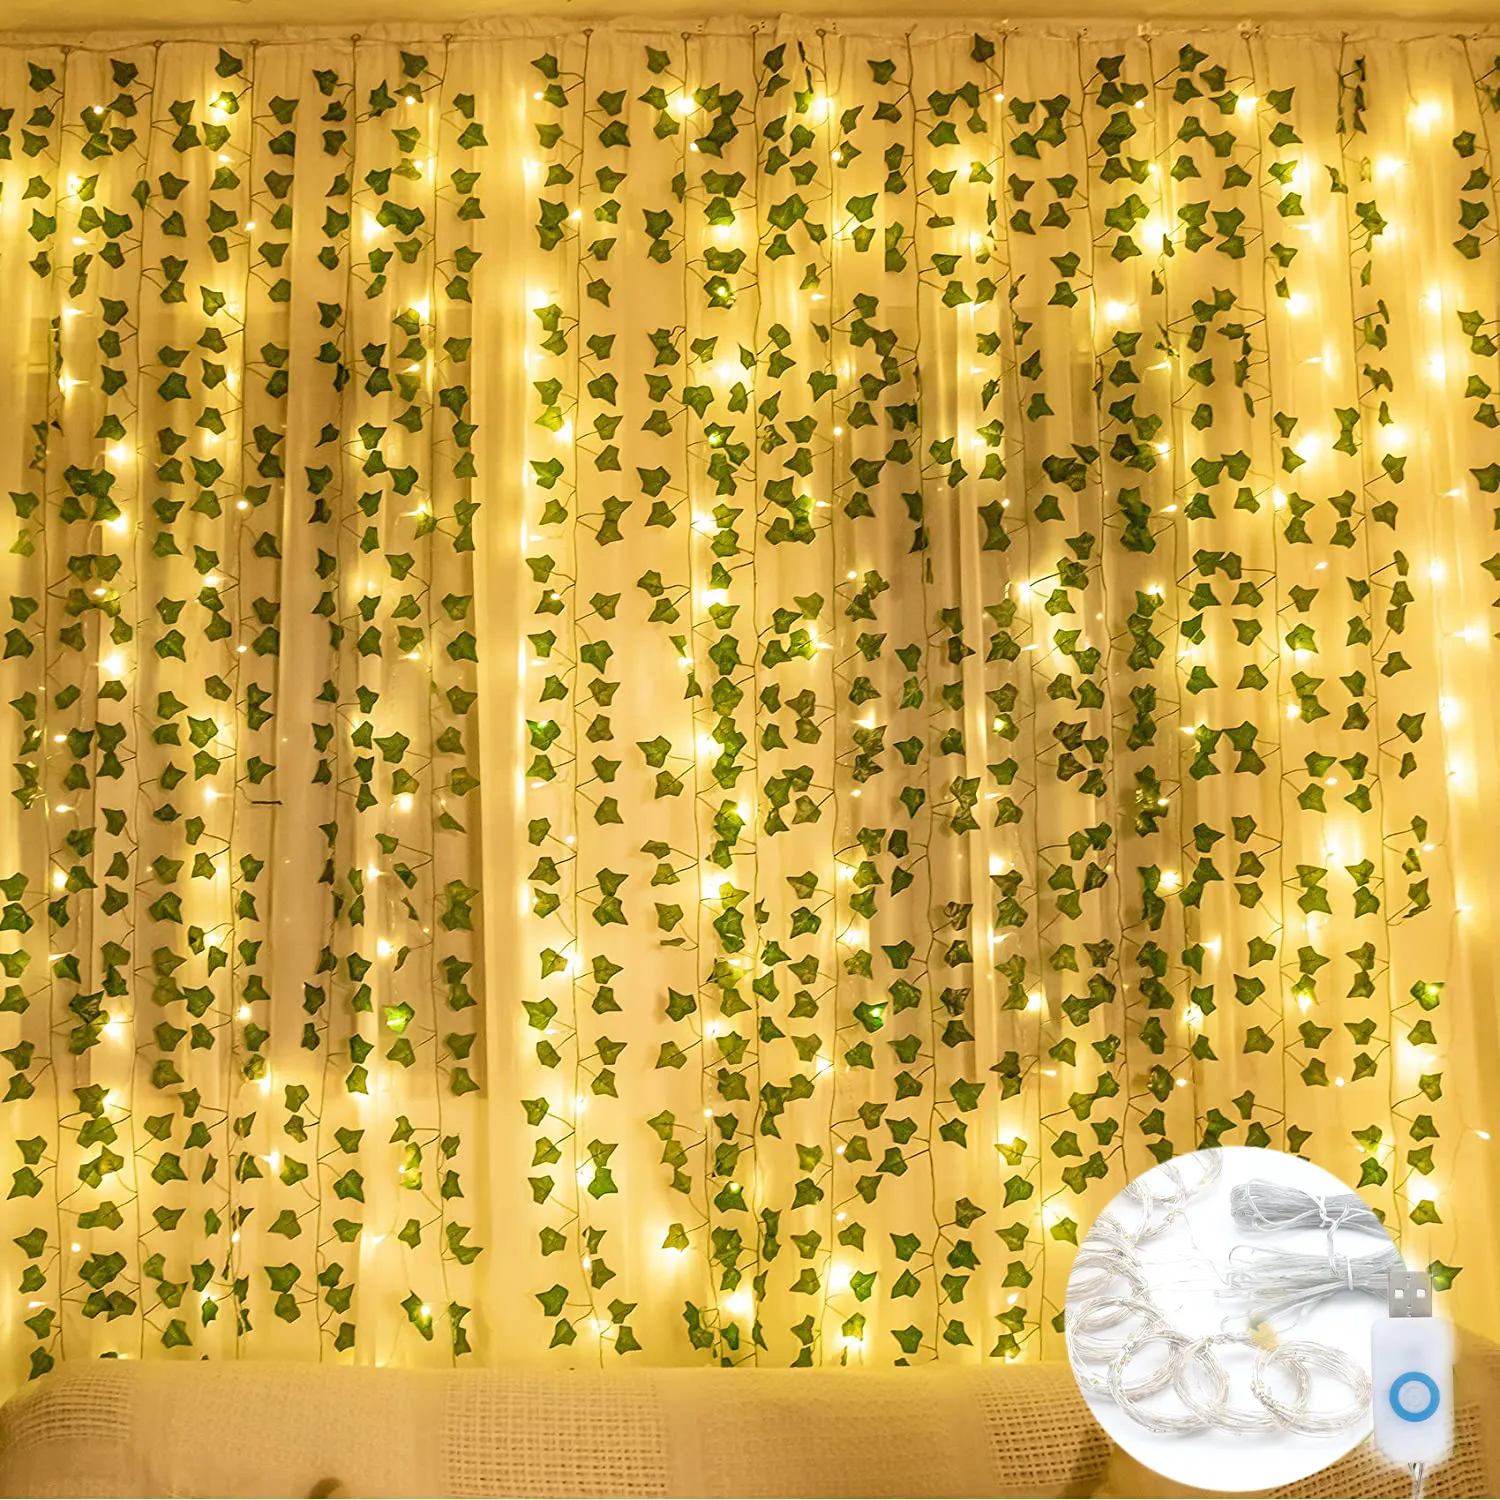 結婚式の装飾ハンギングプラントヴァイン300 LEDカーテンストリングライト人工アイビーガーランド植物リモコン付き